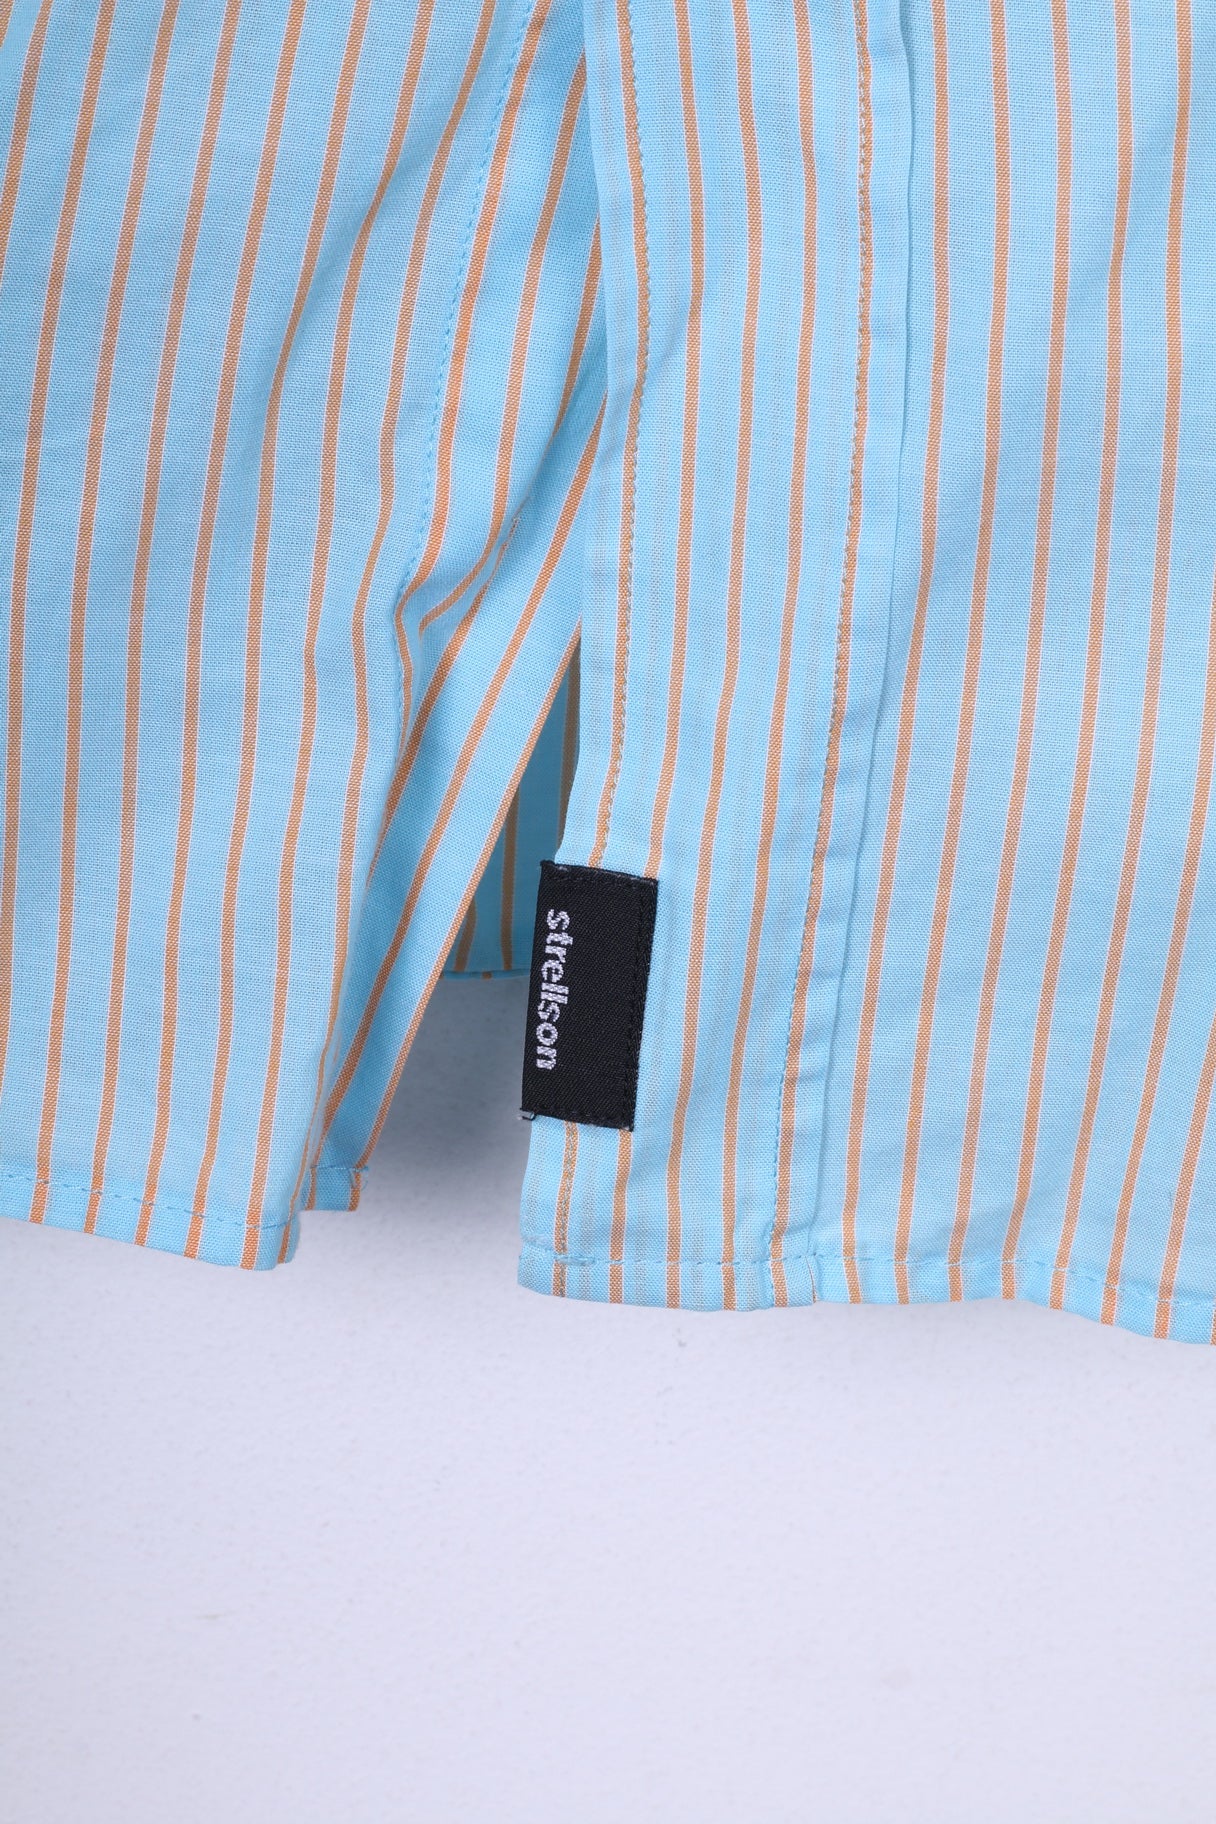 Strellson Uomo L 40 15.5 Camicia casual in cotone a righe blu manica corta